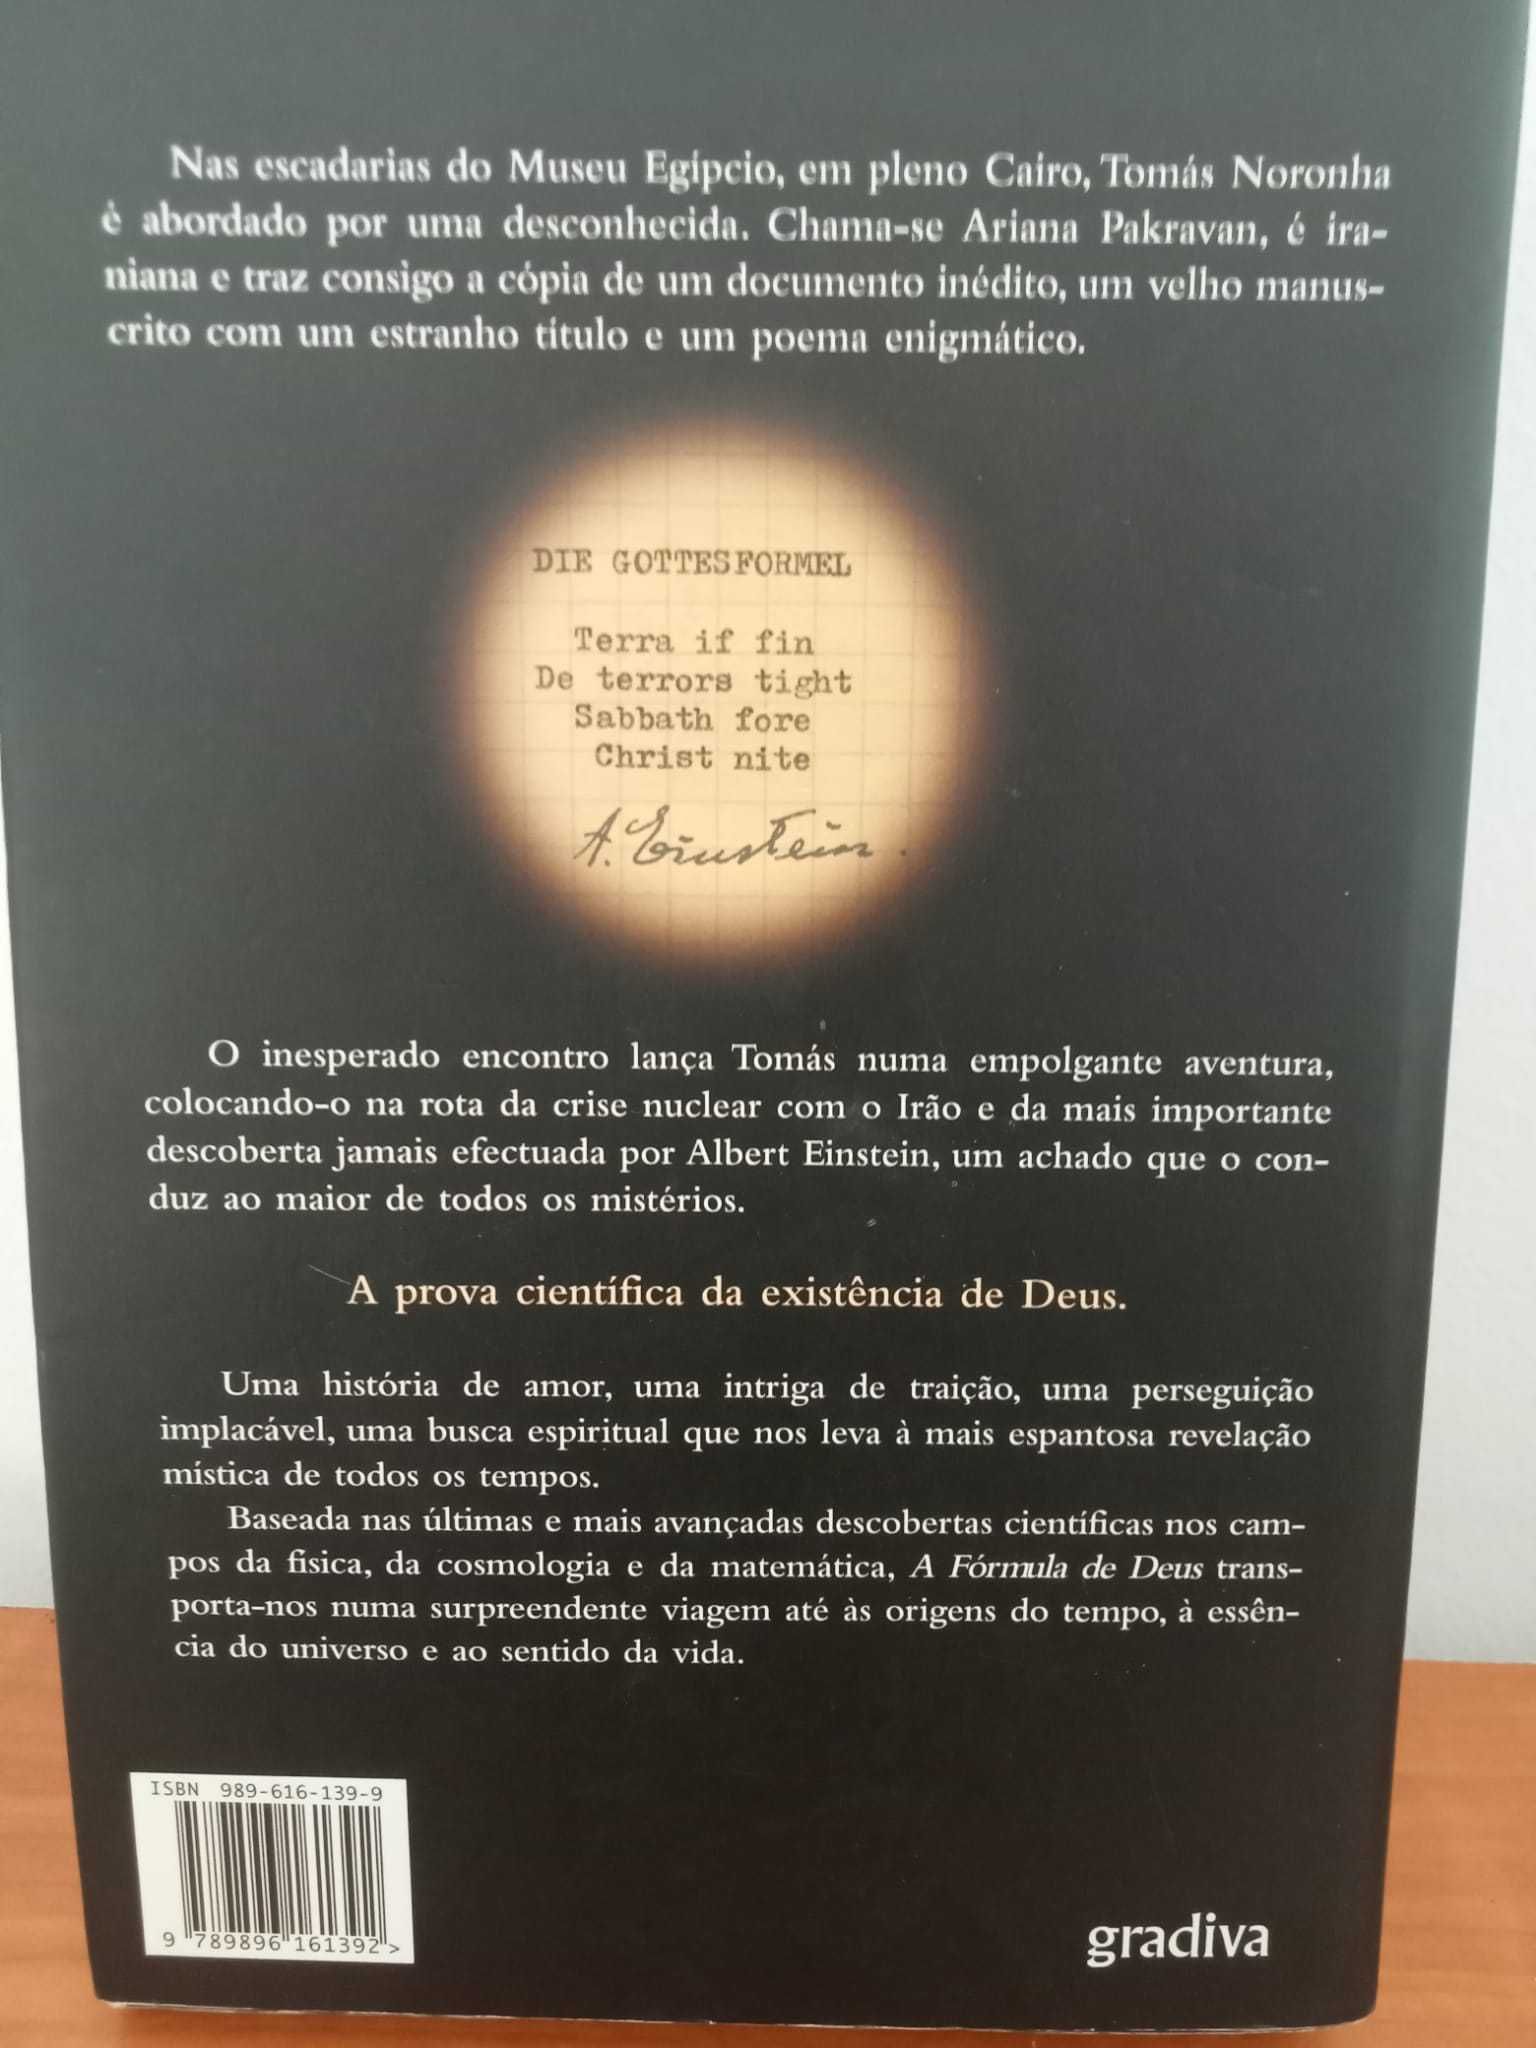 Livro "A Fórmula de Deus" - José Rodrigues dos Santos